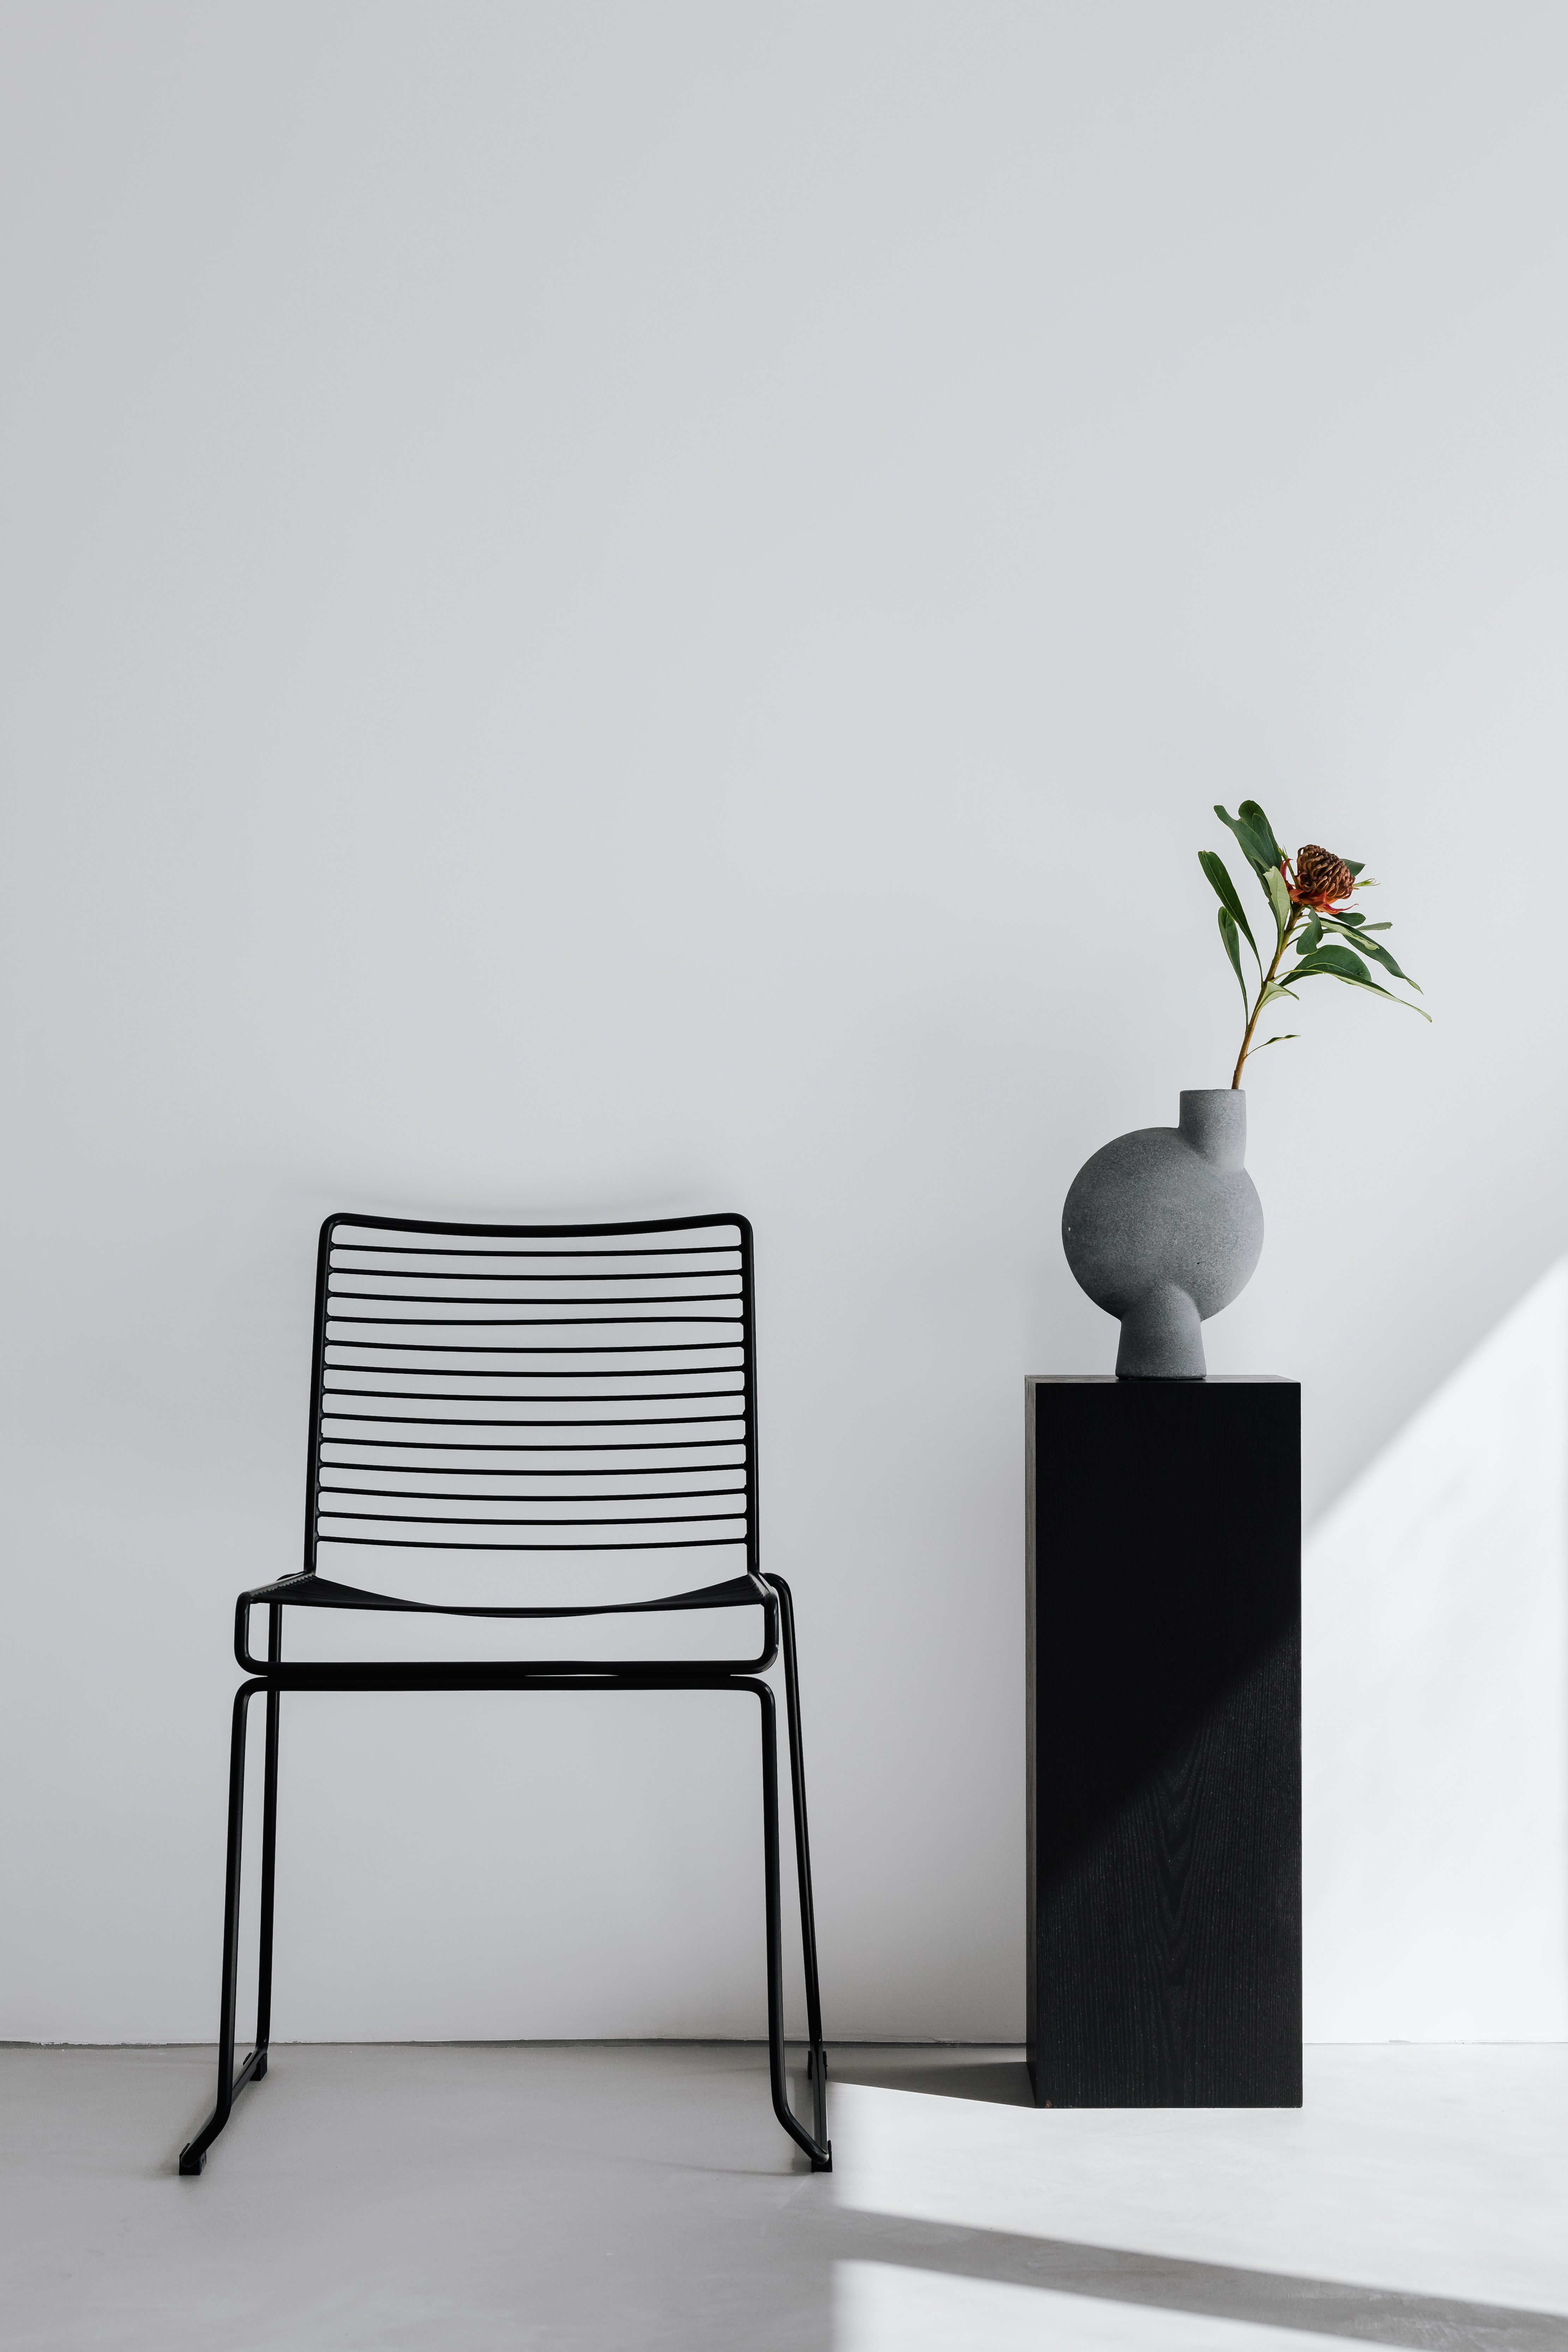 Black metal chair - flowers - modern vase - pedestal